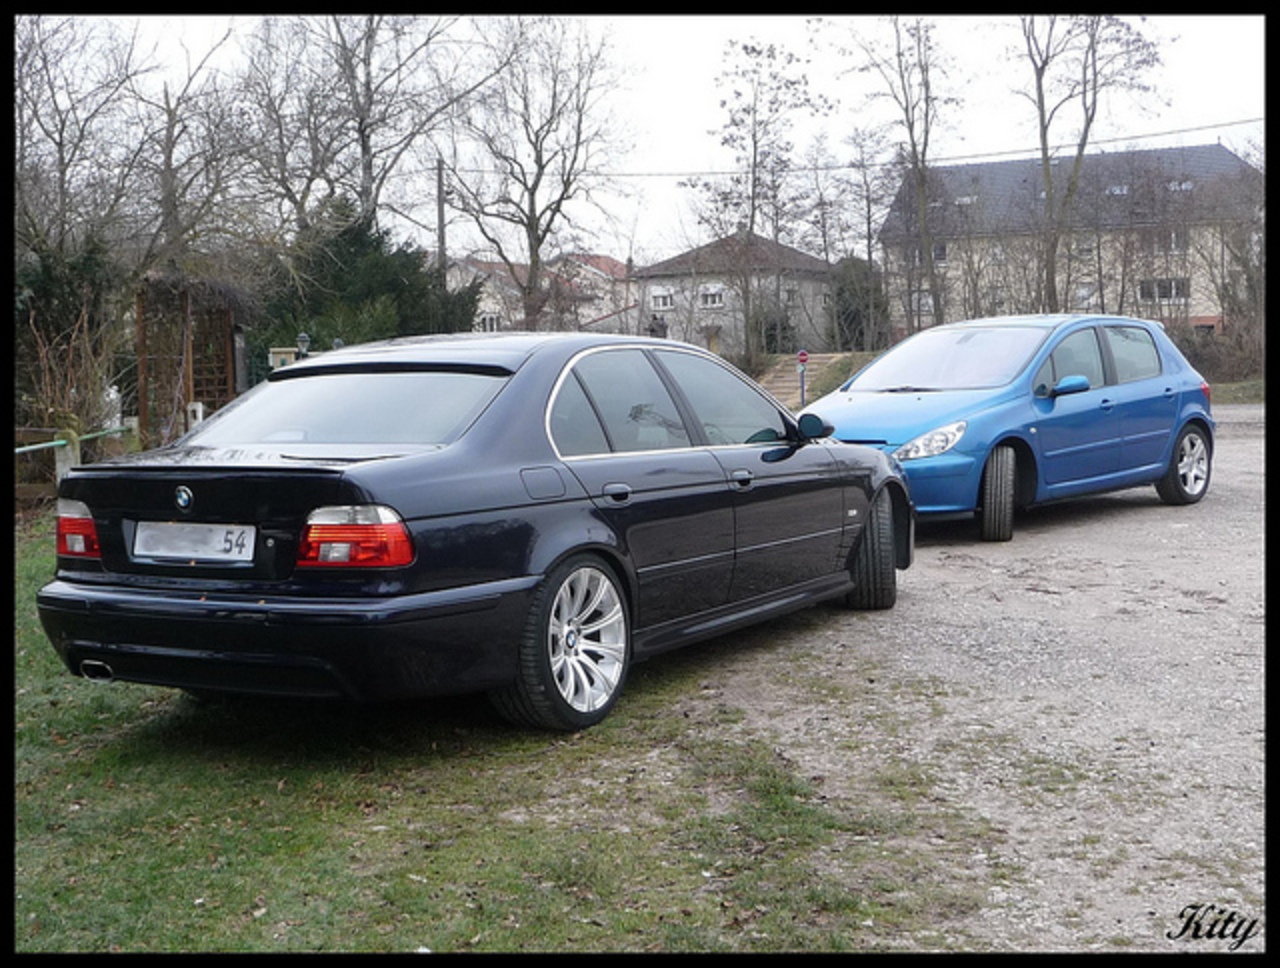 BMW 530 VS Peugeot 307 XSi / Flickr - Partage de photos!